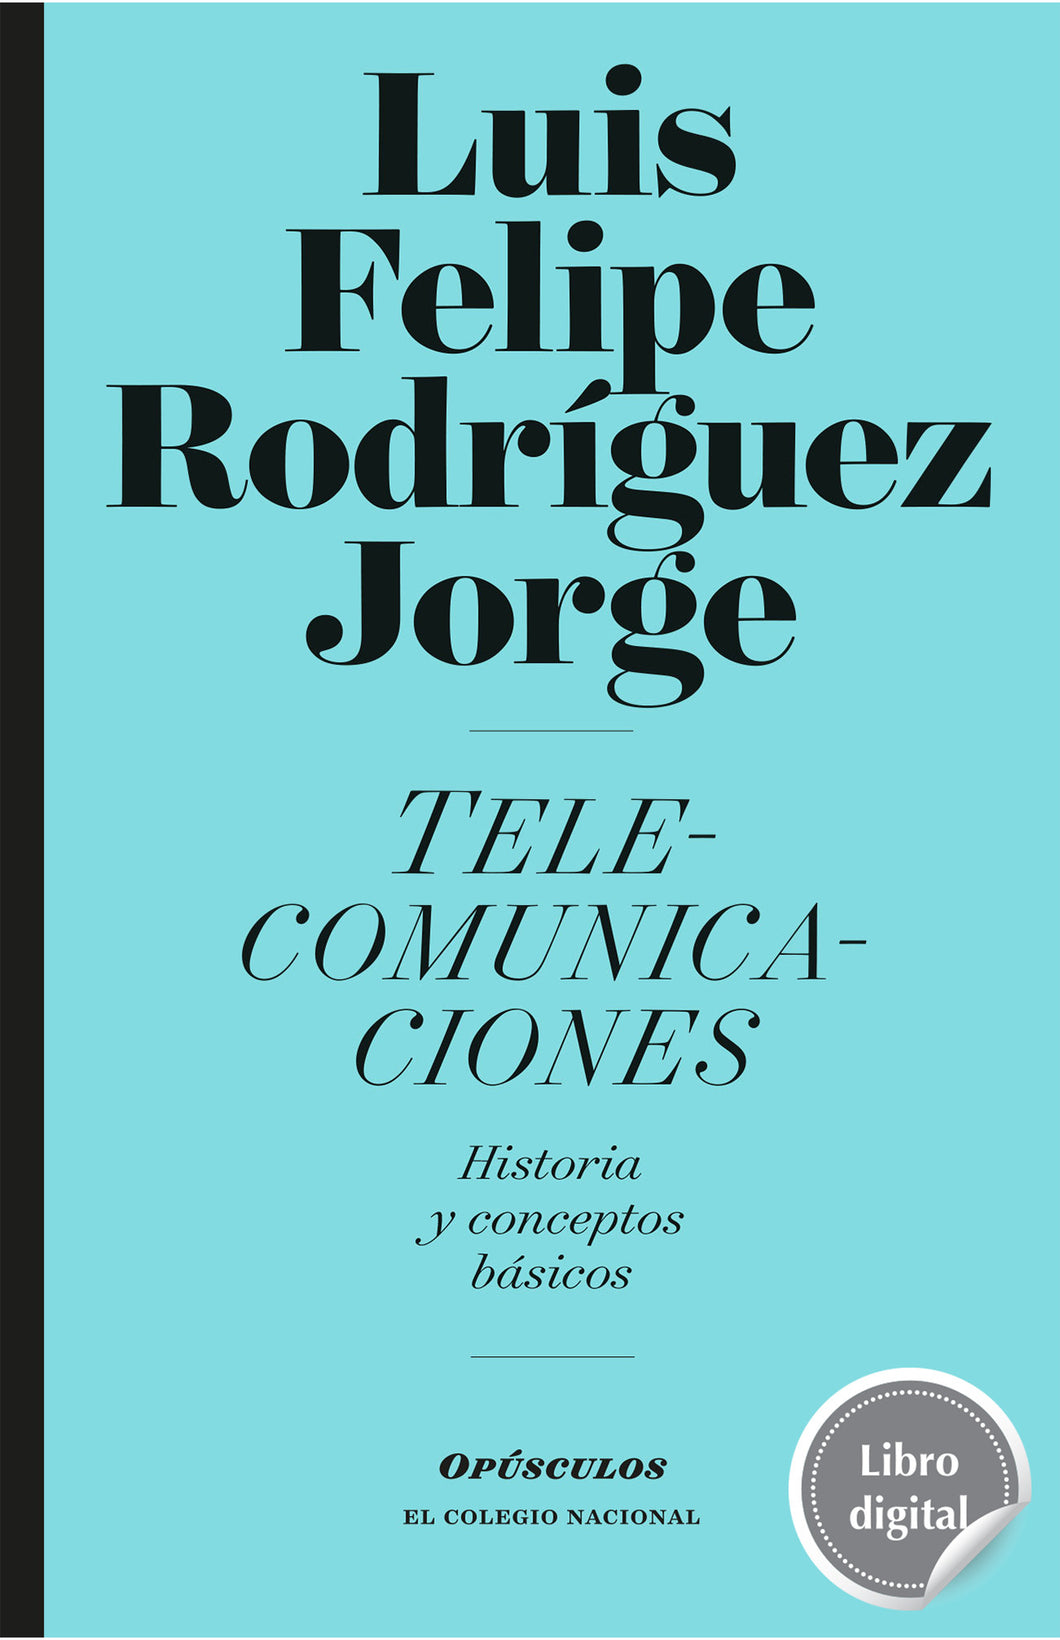 Telecomunicaciones. Historia y conceptos básicos de Luis Felipe Rodríguez Jorge, libro digital de El Colegio Nacional, Libros Colnal